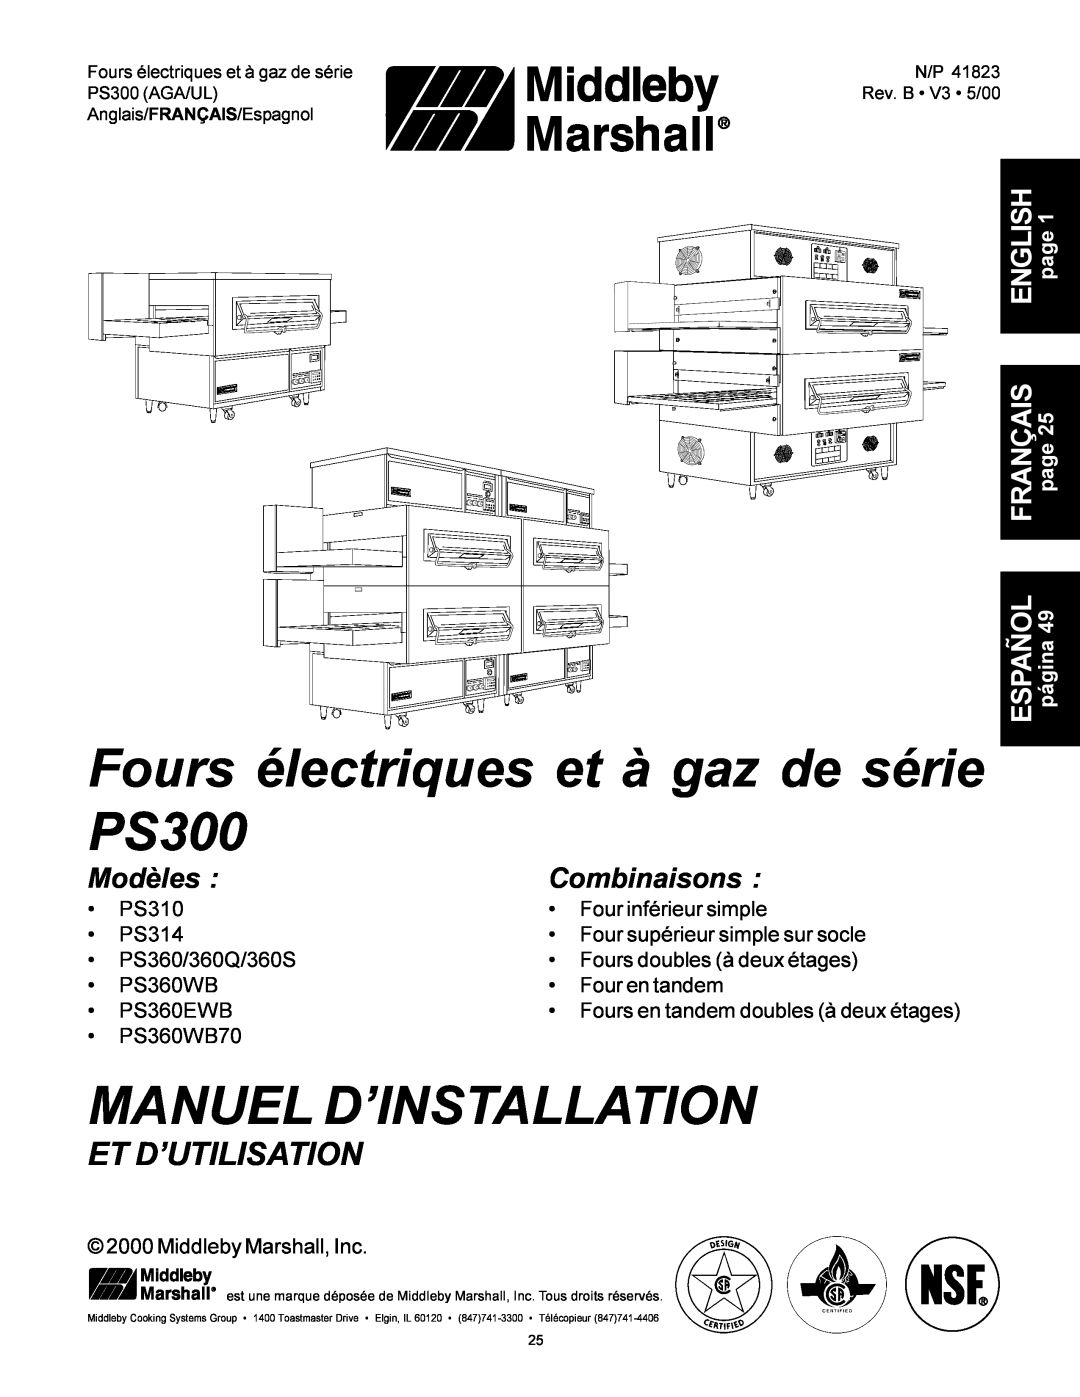 Middleby Marshall PS360, PS310 Fours électriques et à gaz de série PS300, Manuel D’Installation, Et D’Utilisation, Modèles 